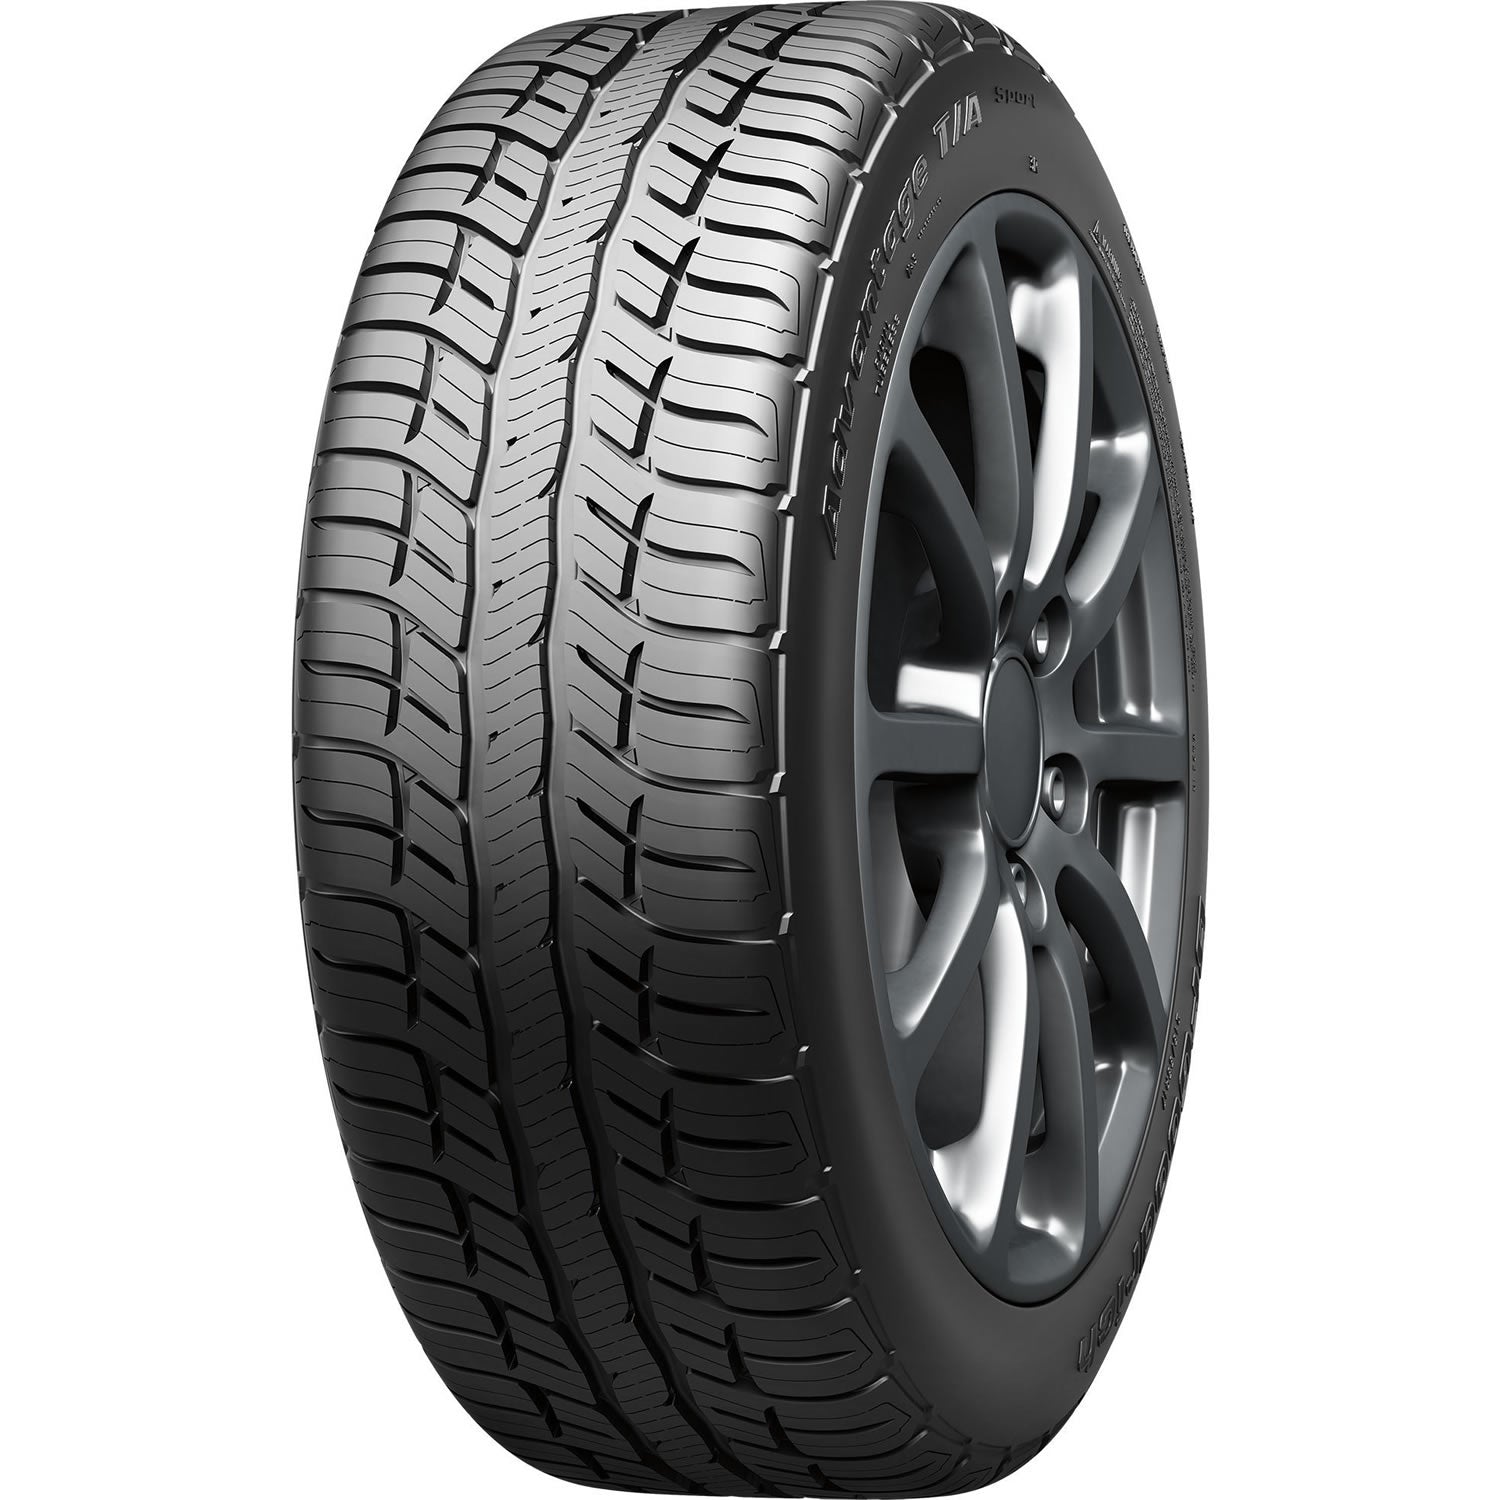 BFGOODRICH ADVANTAGE T/A SPORT 245/55R19 (29.7X9.7R 19) Tires